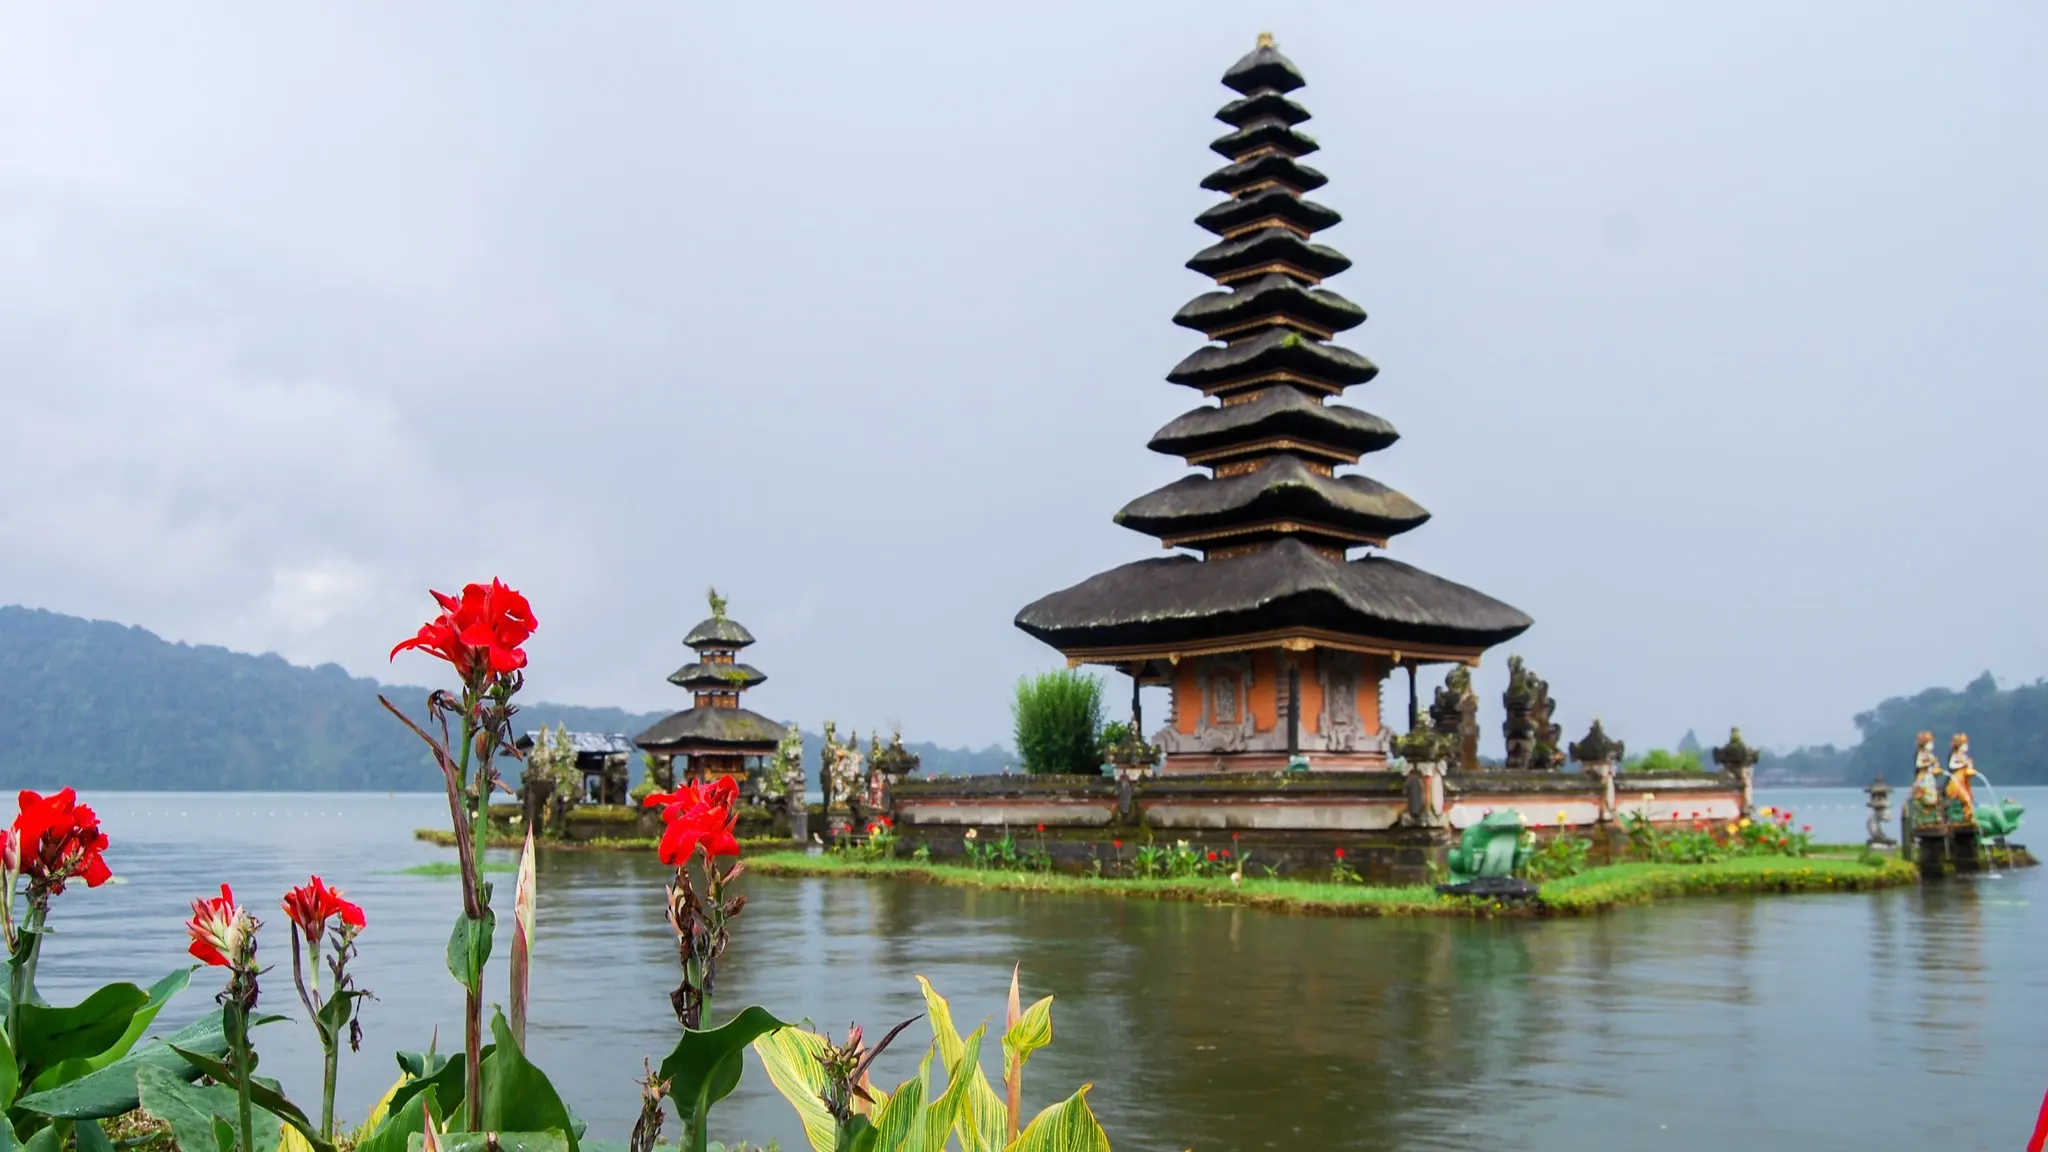 Lake Bratan Temple, Bali, Indonesia